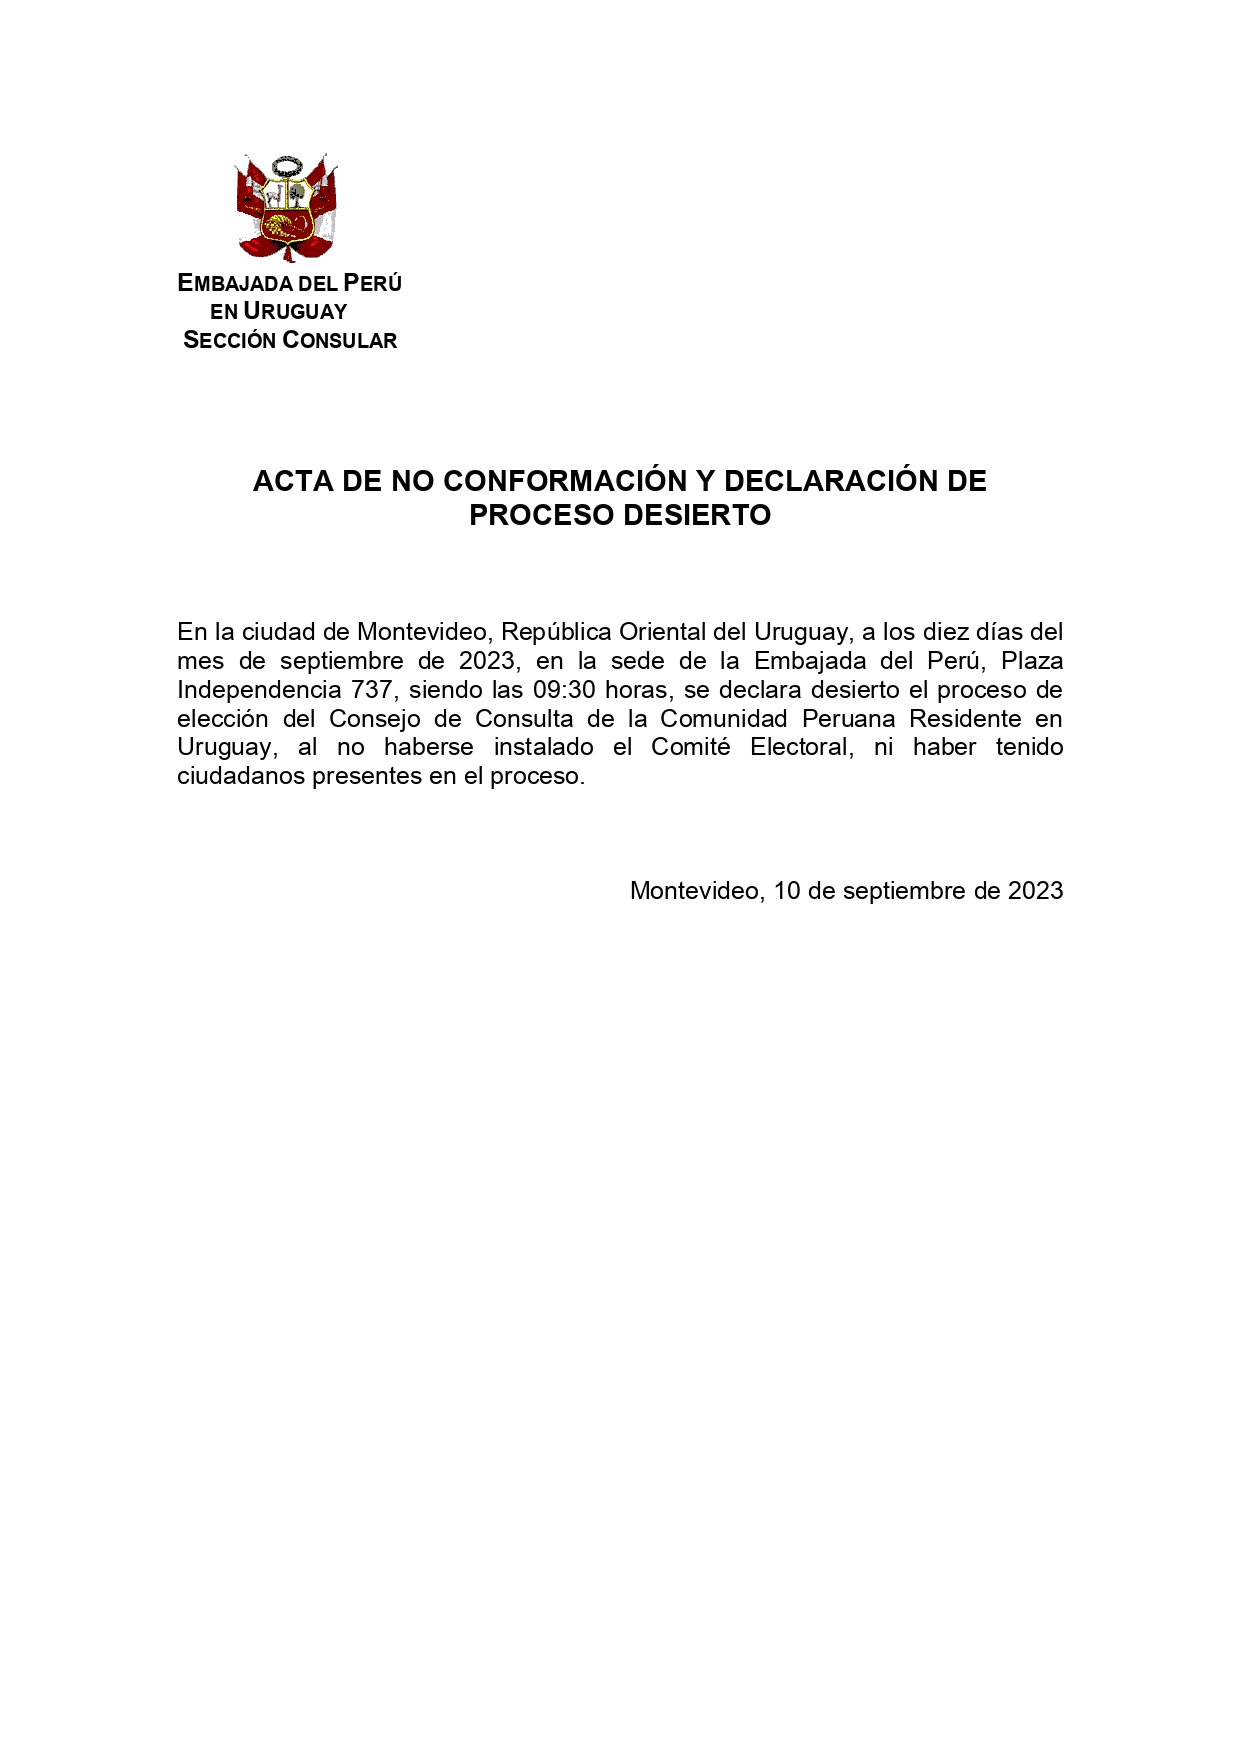 ACTA NO CONFORMACION CONSEJO DE CONSULTA 2023__page-0001 (1).jpg